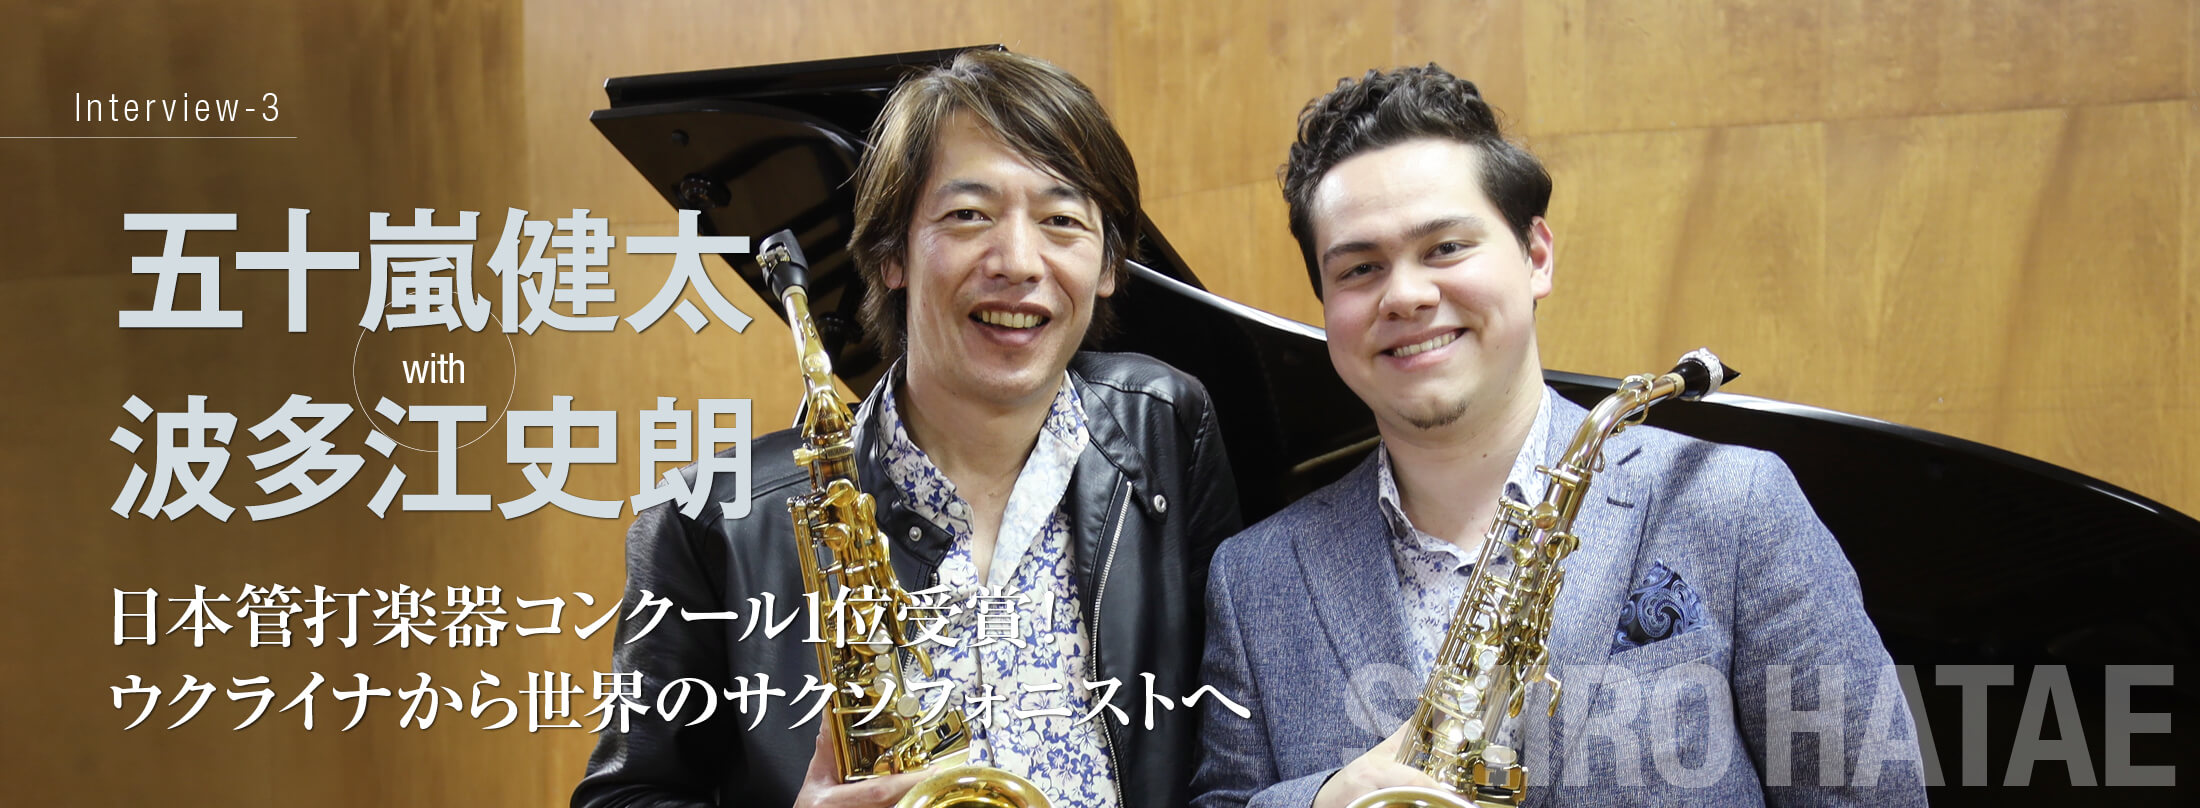 サックス記事 日本管打楽器コンクール1位受賞! ウクライナから世界のサクソフォニストへ